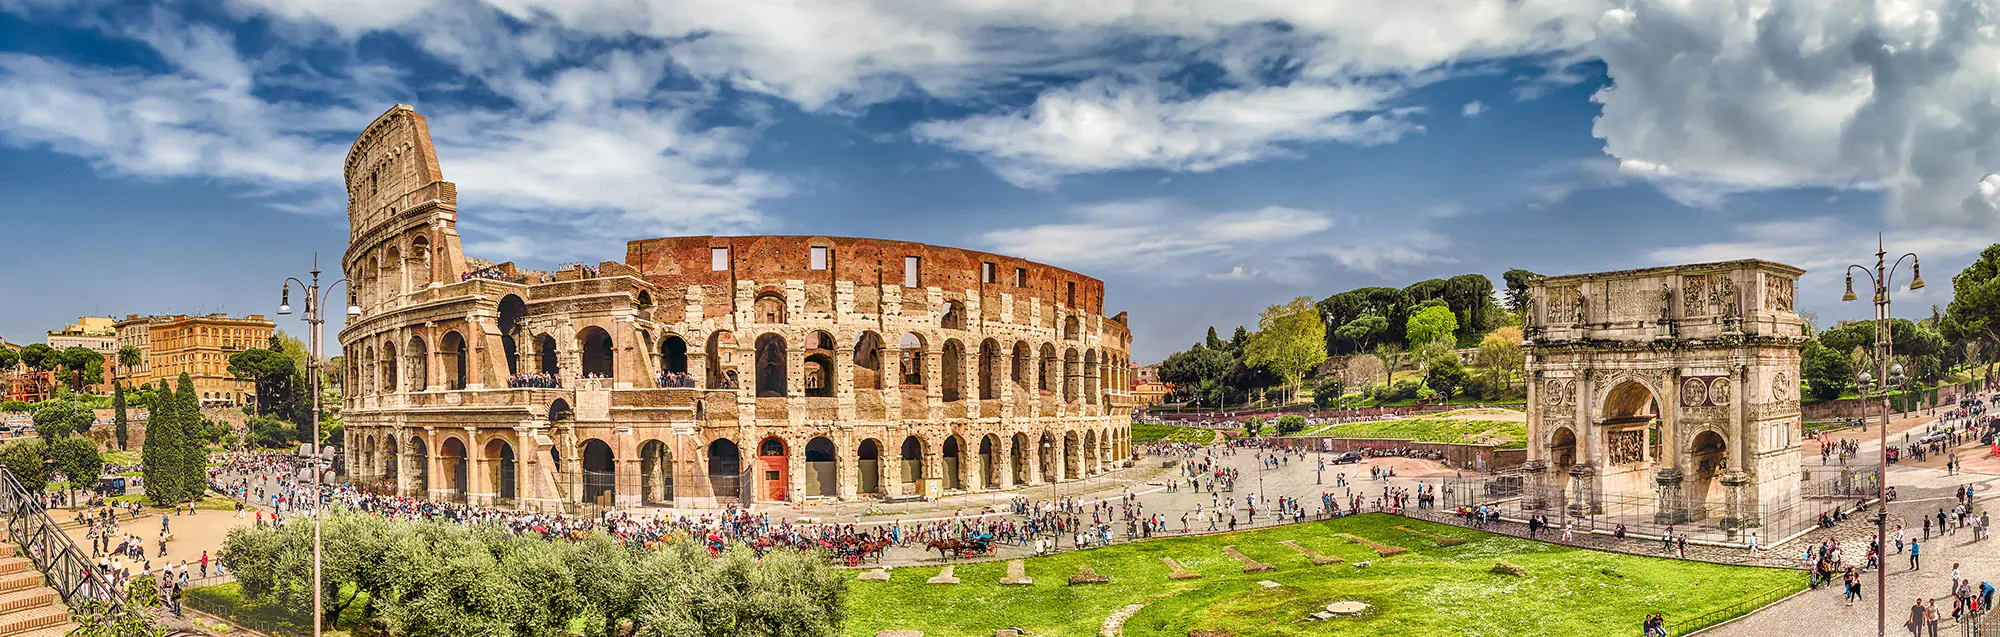 Liste der Sprachschulen in Rom für Erwachsene und Jugendliche